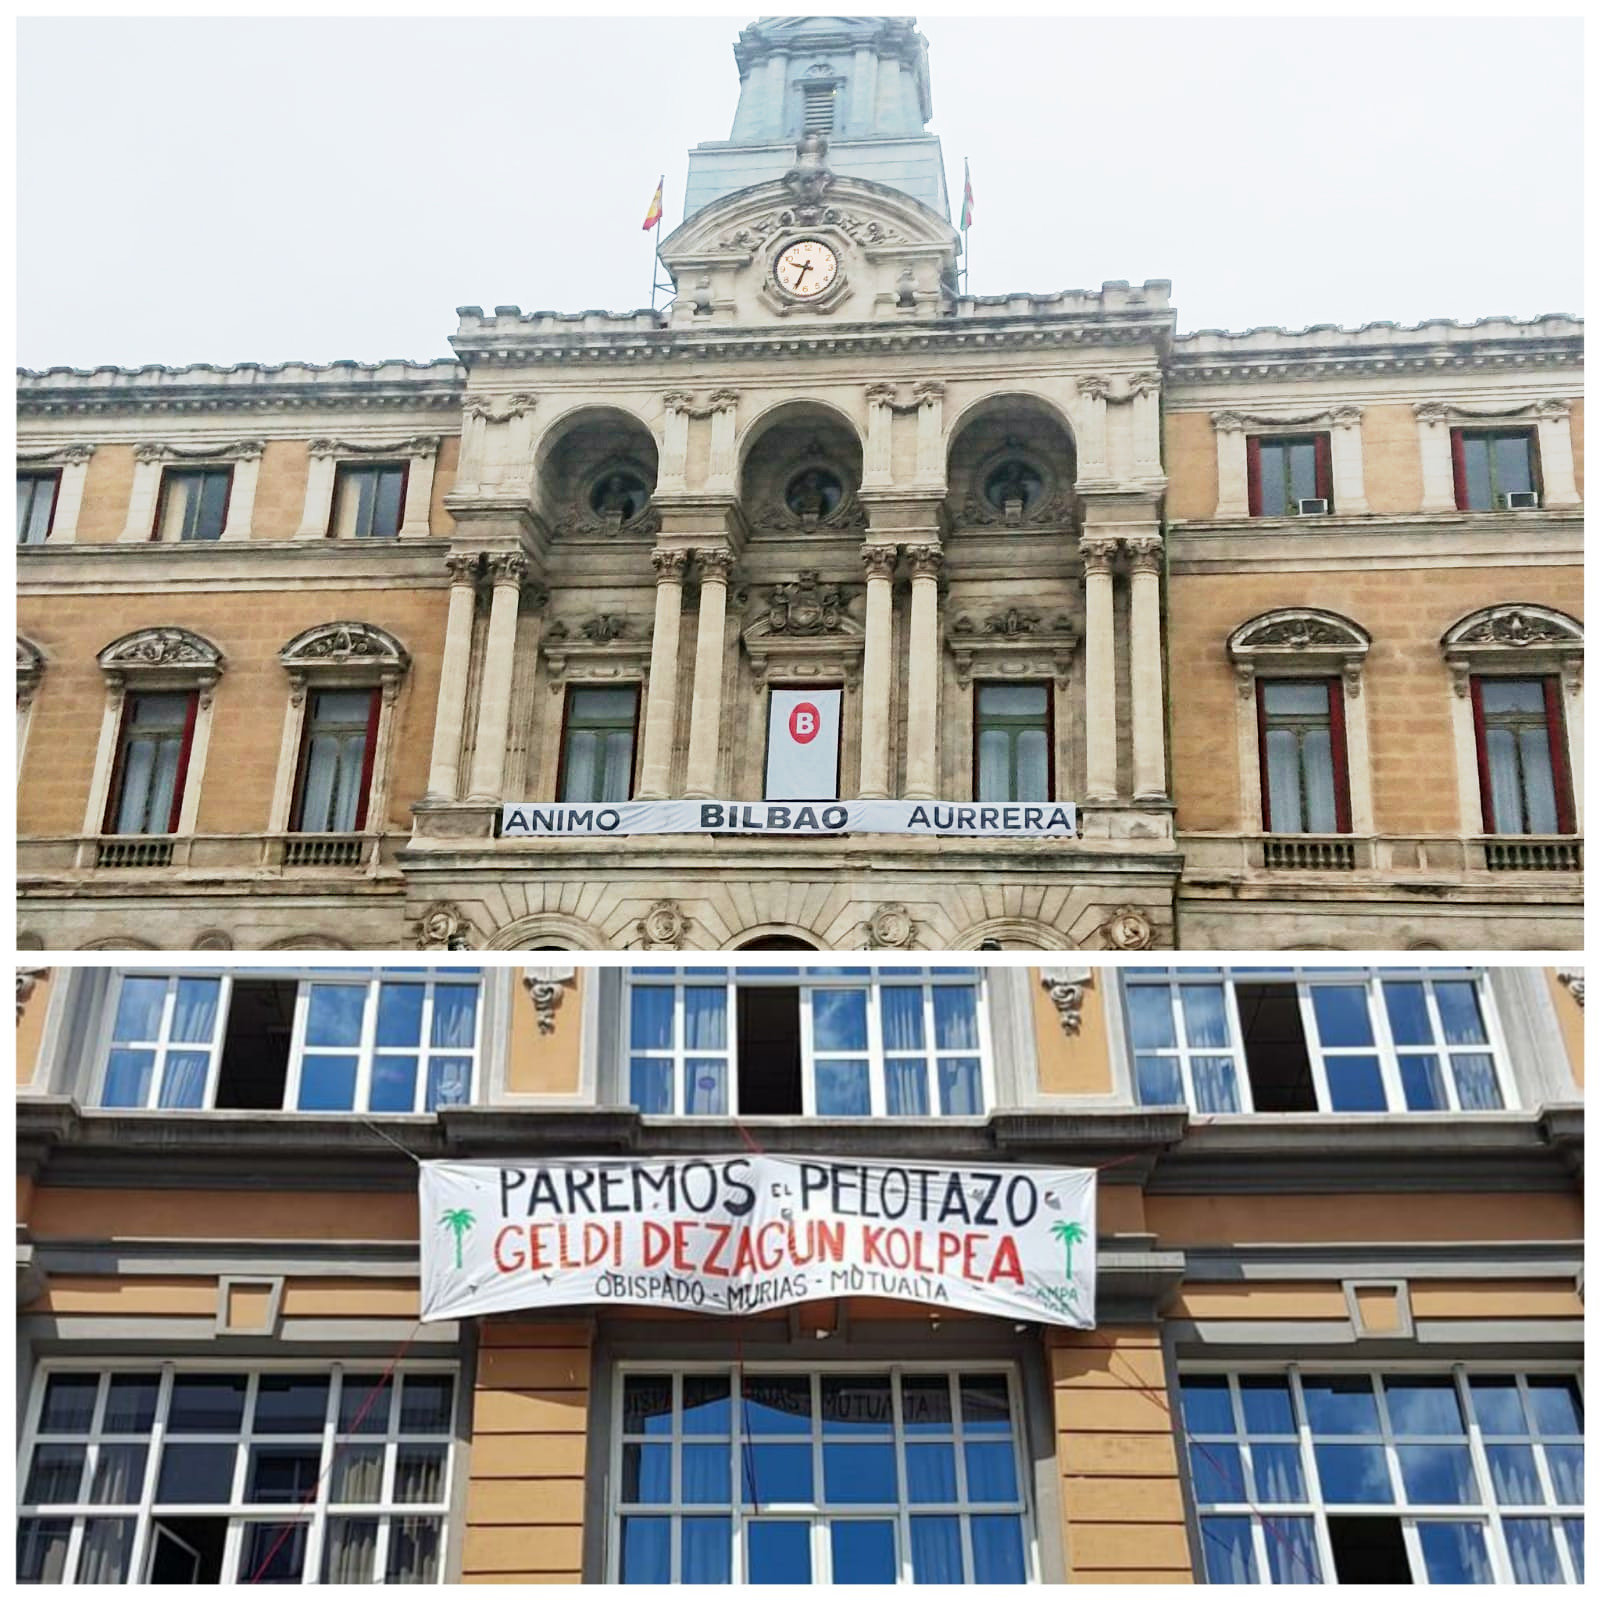 Pancarta en el edificio del ayuntamiento de Bilbao (arriba) y pancarta que no quieren que veas en la fachada de colegio Cervantes (abajo).